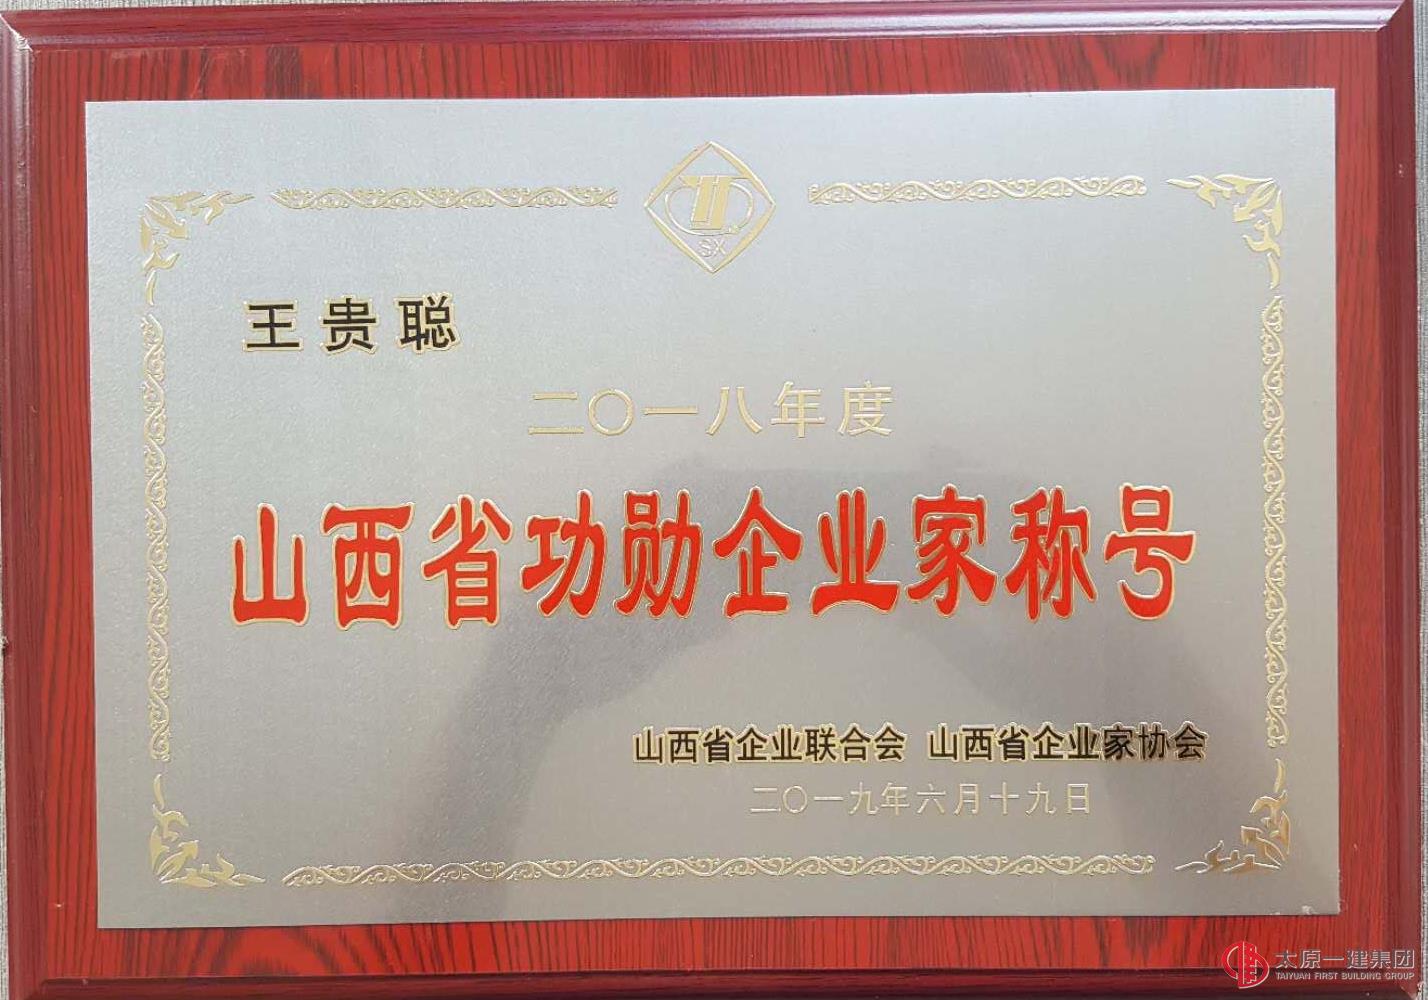 集团公司荣获2018年度山西省功勋企业及2019山西省企业文化优秀成果奖